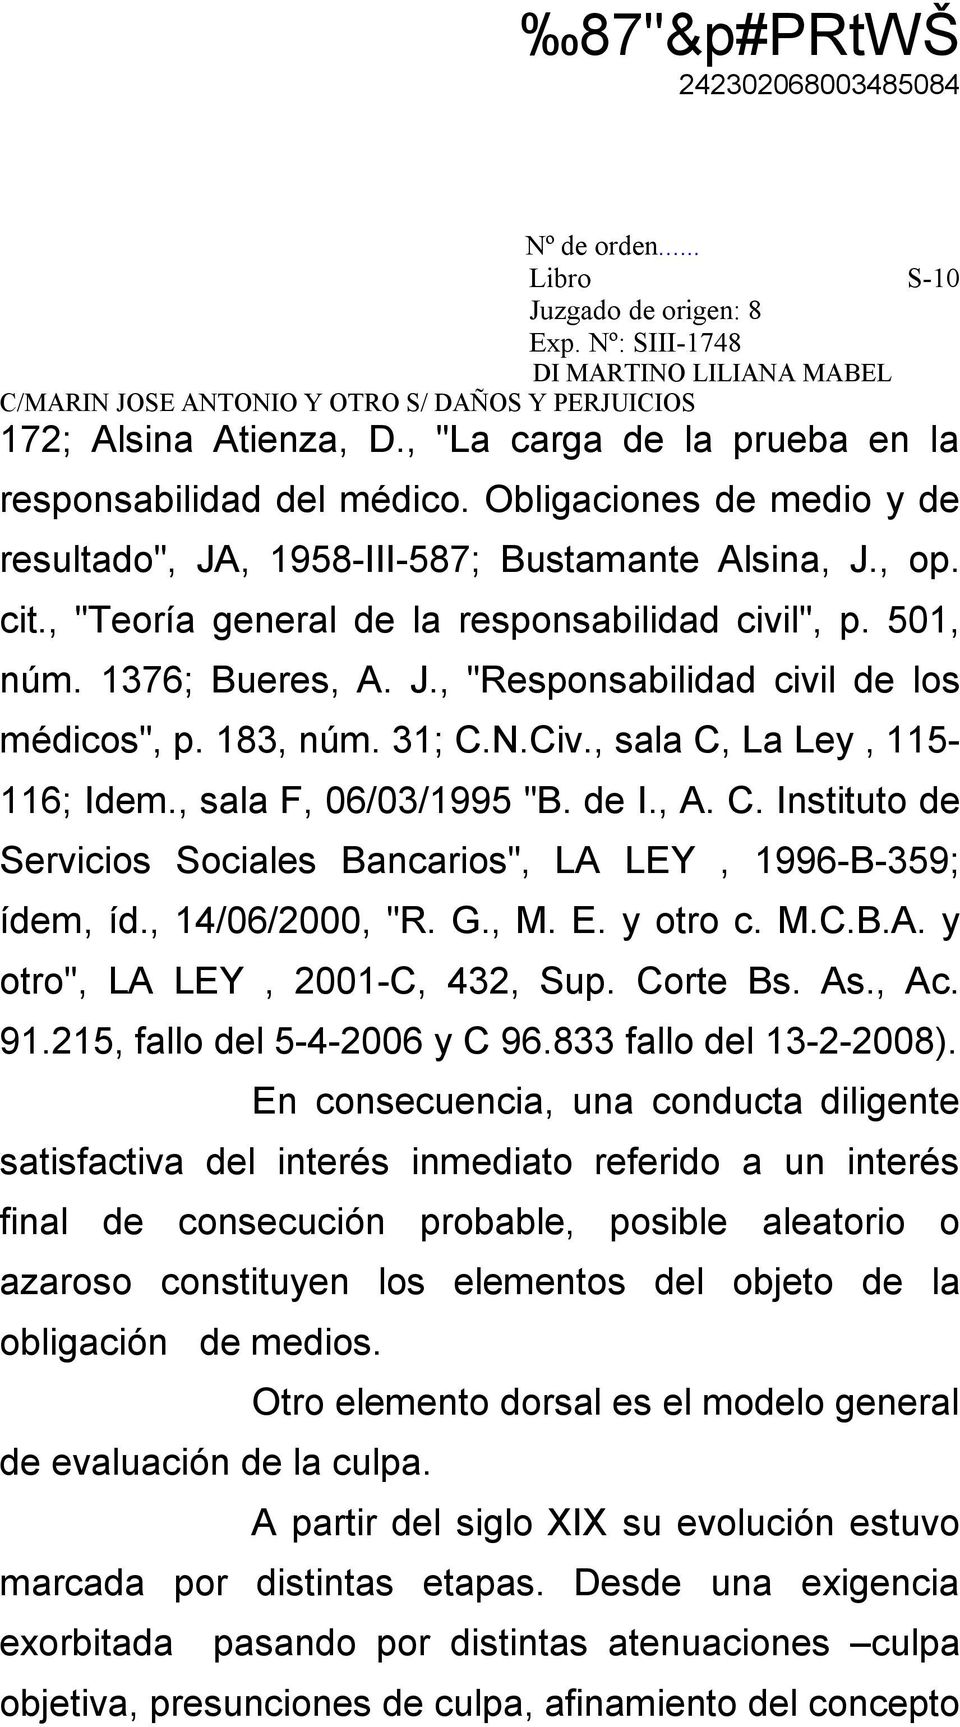 , sala F, 06/03/1995 "B. de I., A. C. Instituto de Servicios Sociales Bancarios", LA LEY, 1996-B-359; ídem, íd., 14/06/2000, "R. G., M. E. y otro c. M.C.B.A. y otro", LA LEY, 2001-C, 432, Sup.